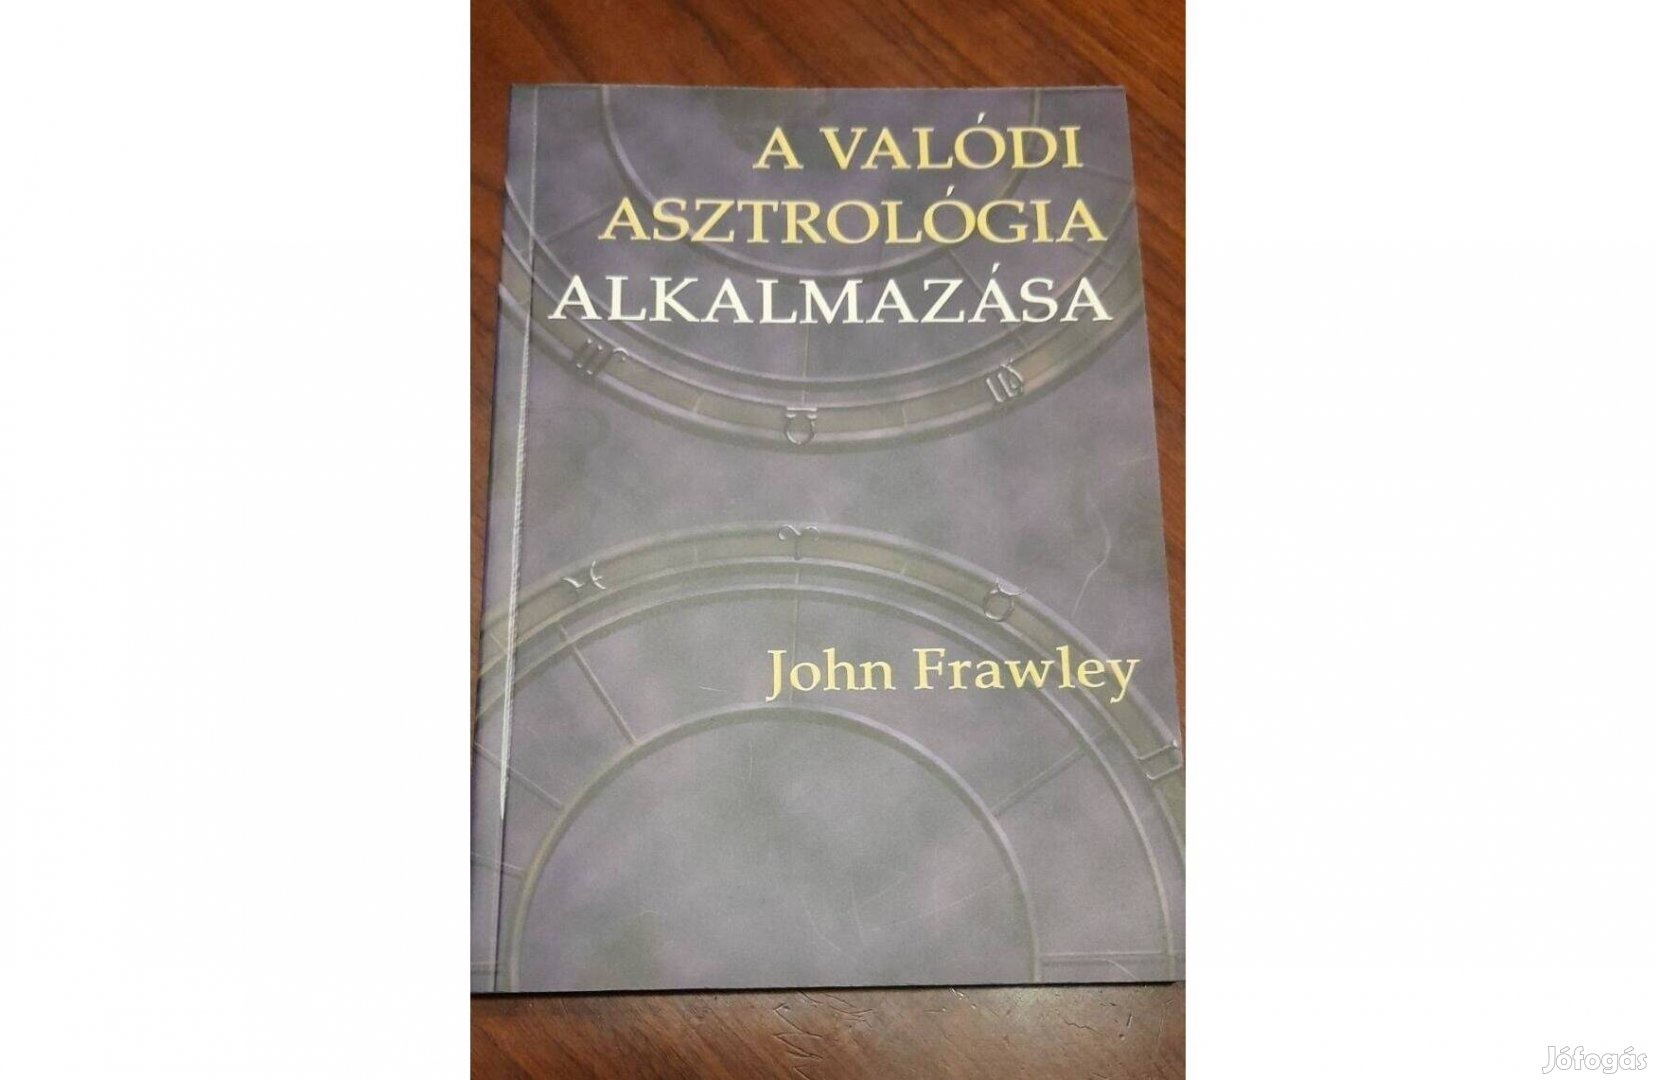 John Frawley: A valódi asztrológia alkalmazása